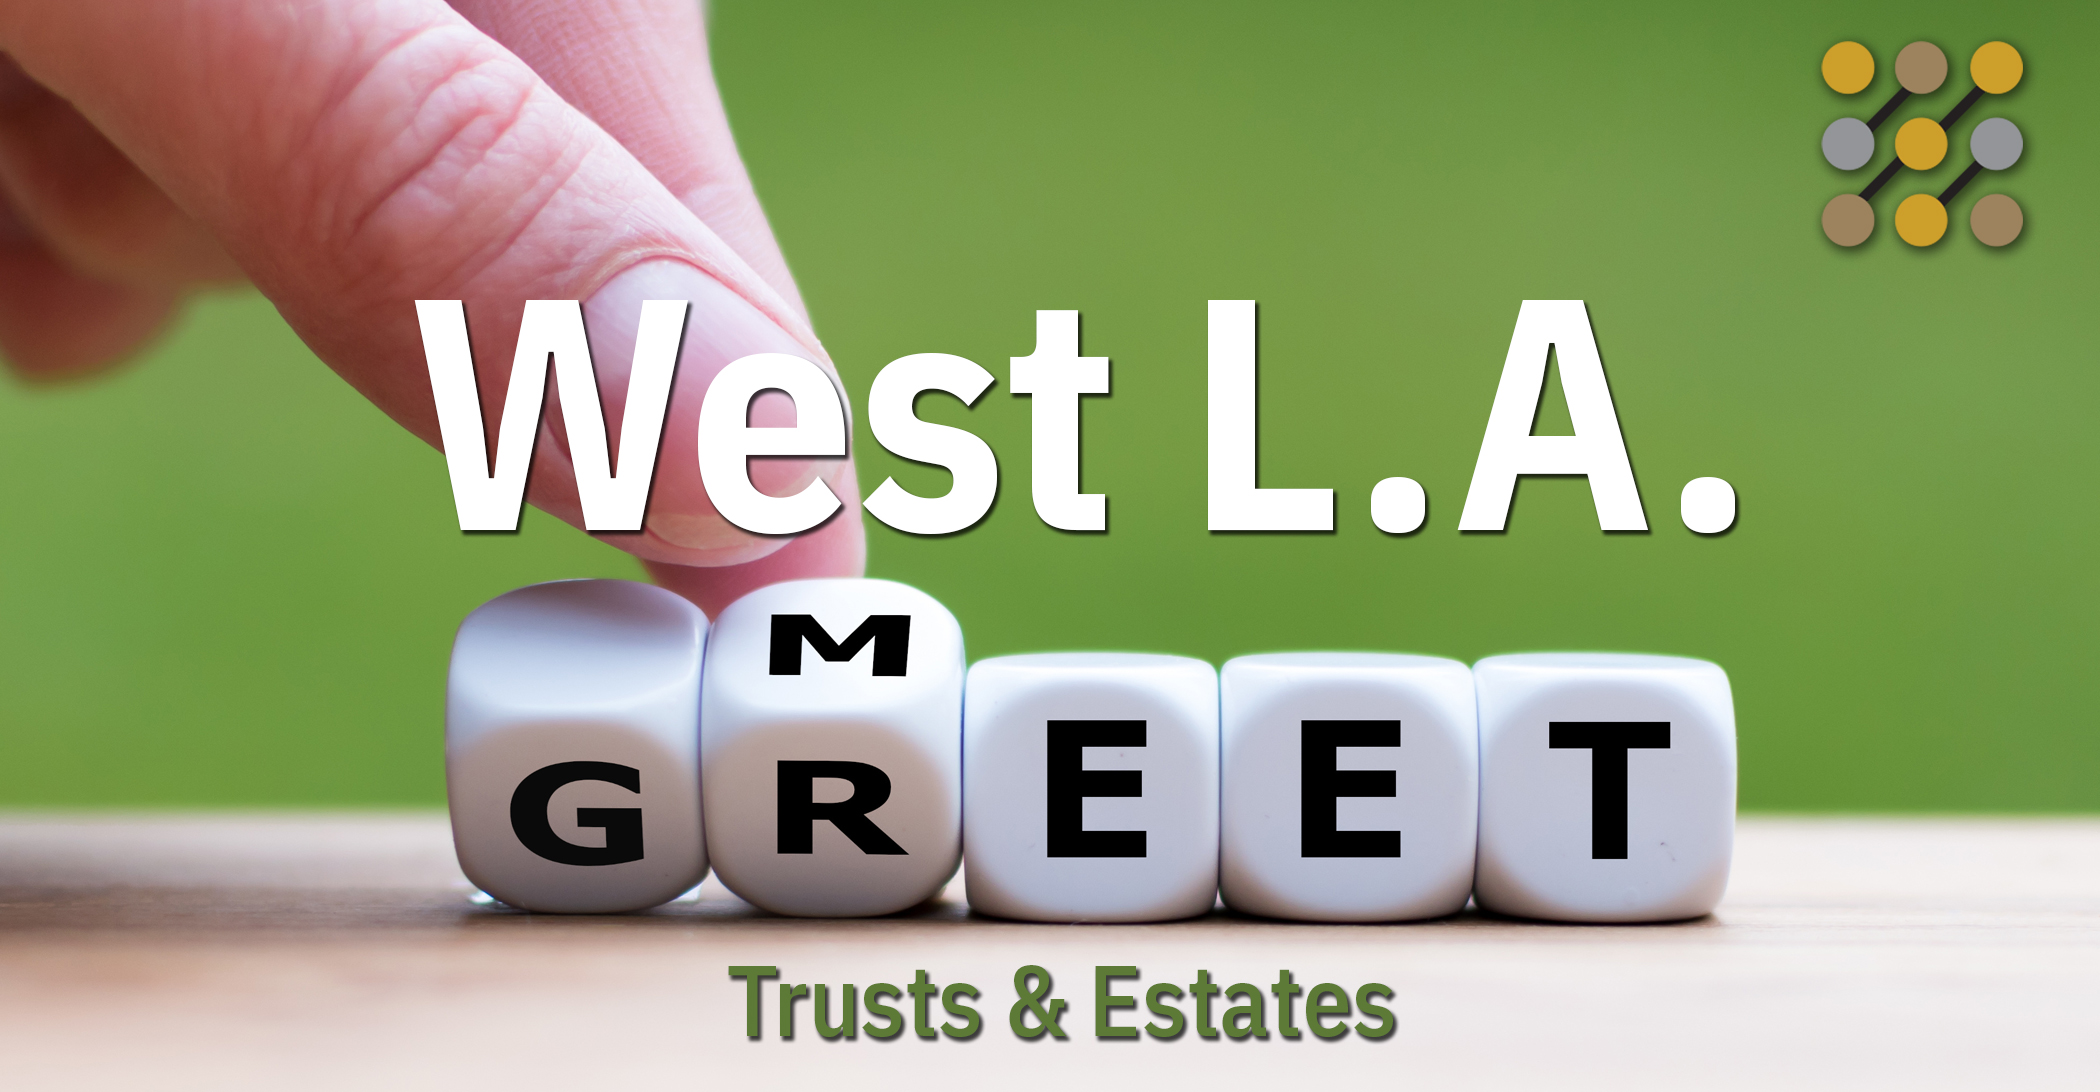 West L.A. Meet and Greet—Trusts & Estates